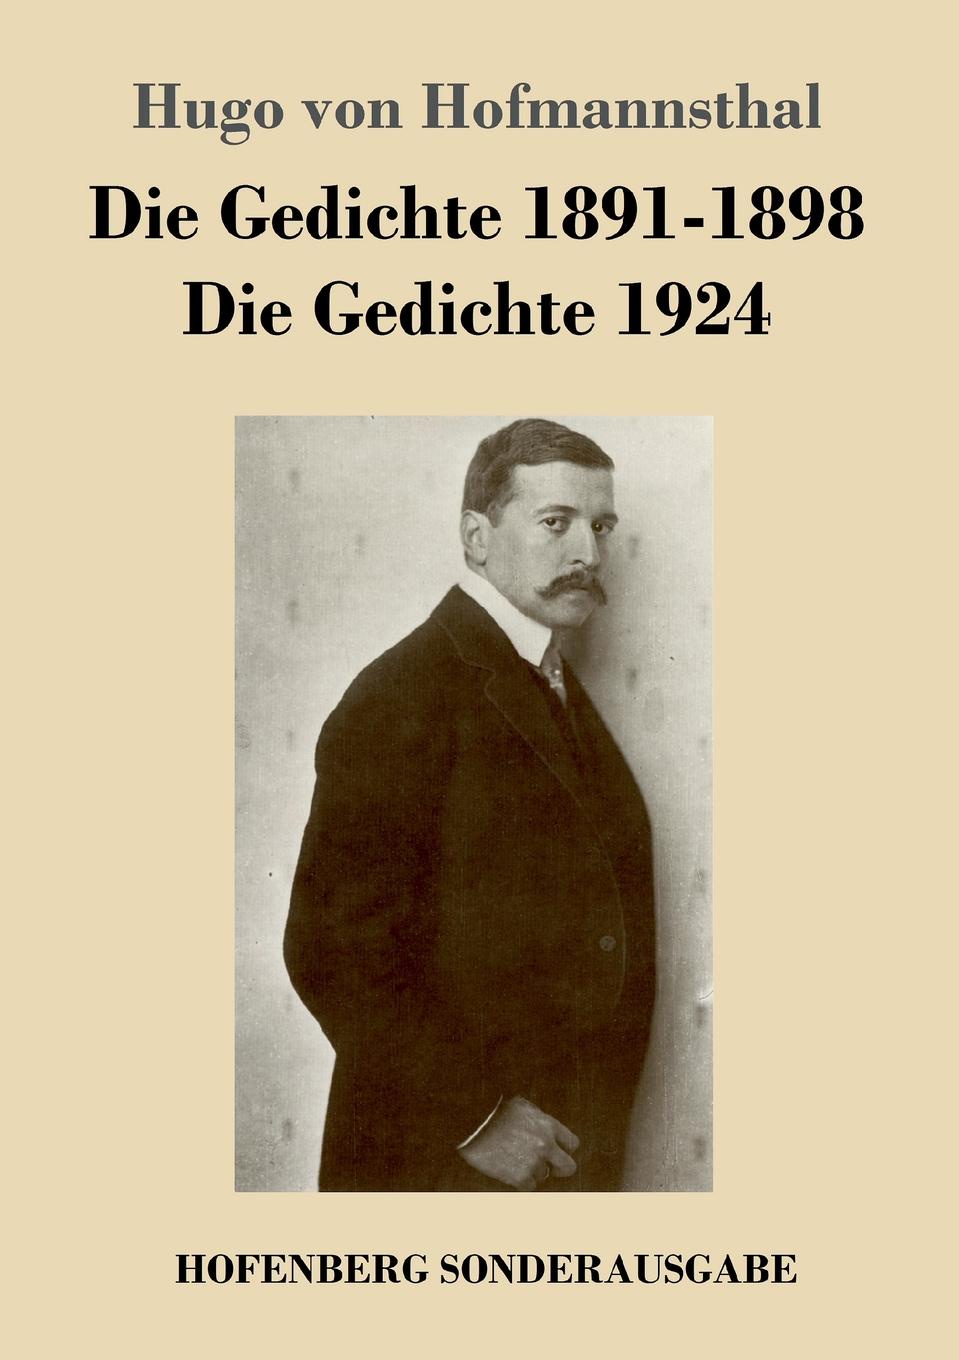 Hugo von Hofmannsthal Die Gedichte 1891-1898 / Die Gedichte 1924